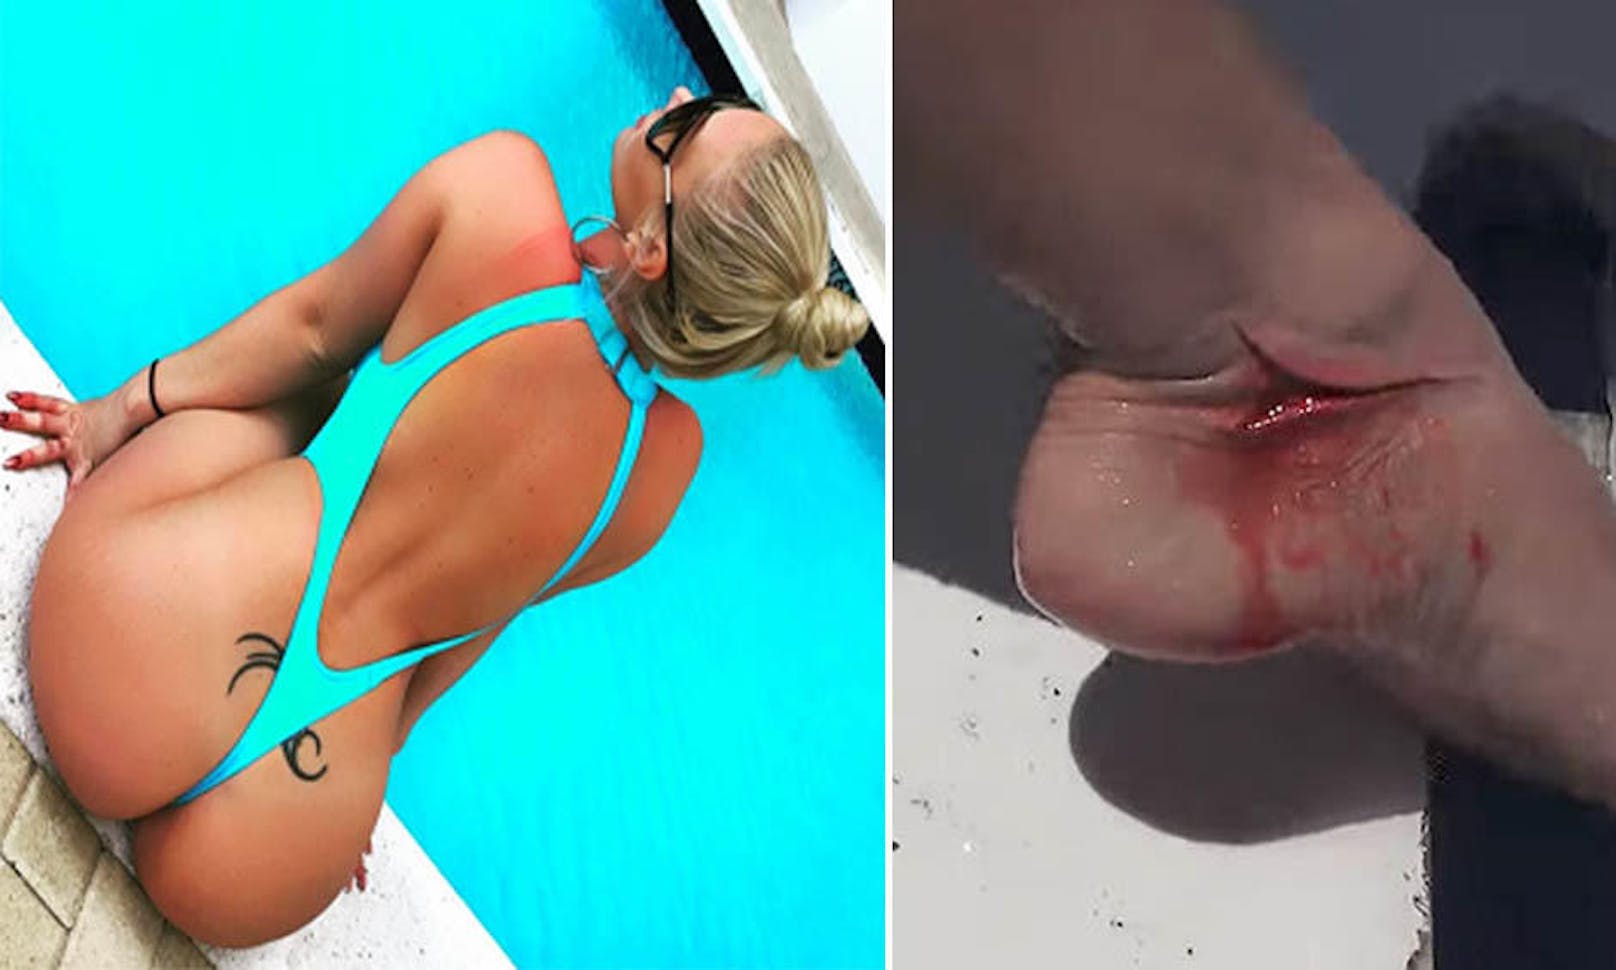 <b>6. Mai 2017: </b>Dieser Werbedreh endete blutig! Pornostar <b>Molly Cavalli </b>drehte im Mai vor der Küste Floridas einen kurzen Clip für die Seite "Camsoda.com". Dafür wurde die 36-Jährige in einen Haikäfig gesperrt und ins Wasser gelassen. Als sich ein <b>Hai </b>der hübschen Blondine näherte, biss das Tier zu. 

<b>Mehr Bilder, Videos:</b> <a href="https://www.heute.at/welt/news/story/Video--Fotos--Porno-Star-wird-von-Hai-gebissen-46725864" target="_blank">Porno-Star wird von Hai gebissen</a>